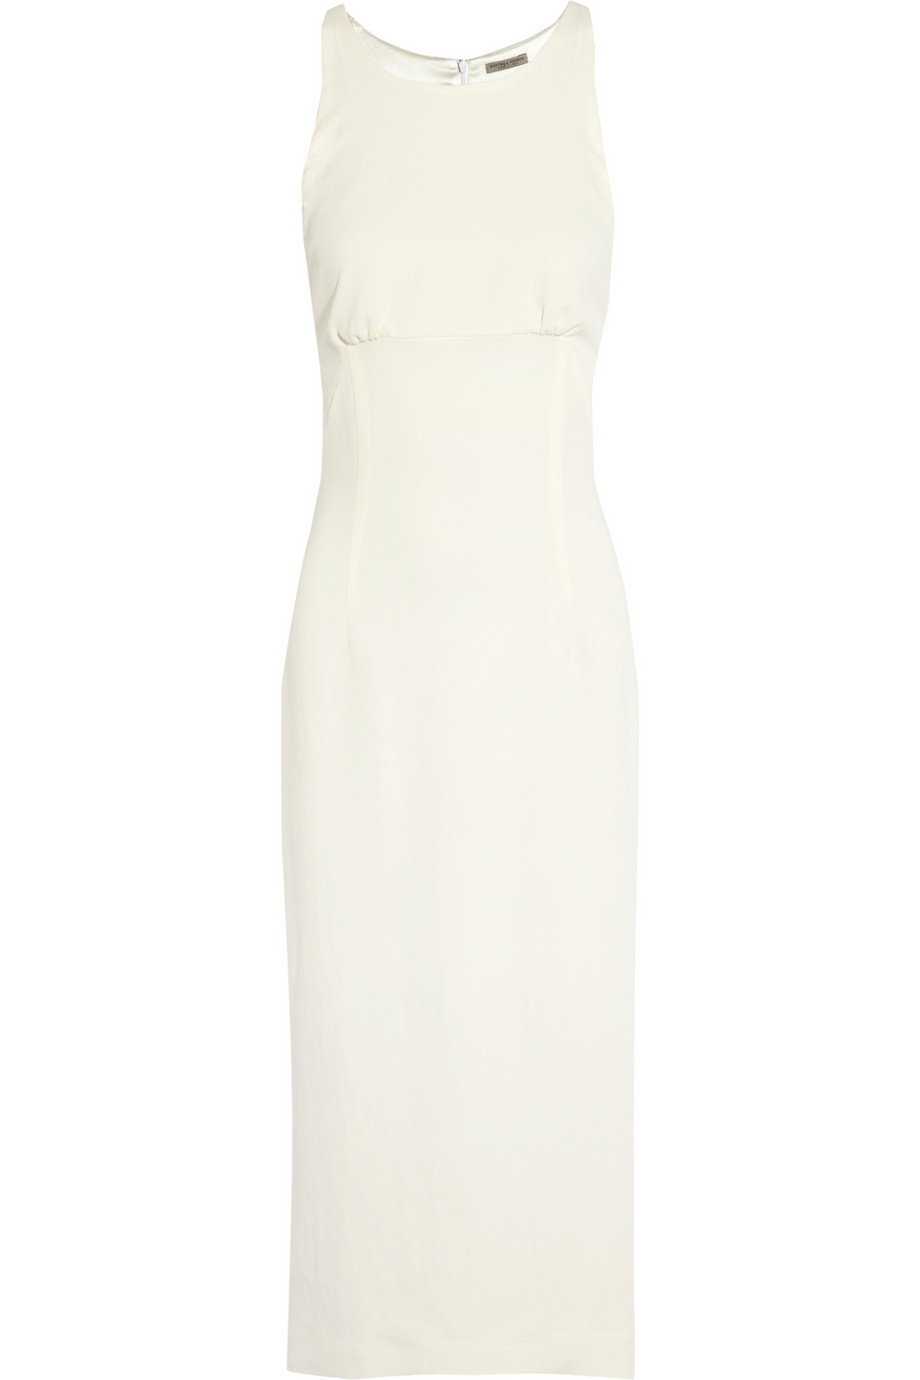 Lyst - Bottega Veneta Crepe Midi Dress in White